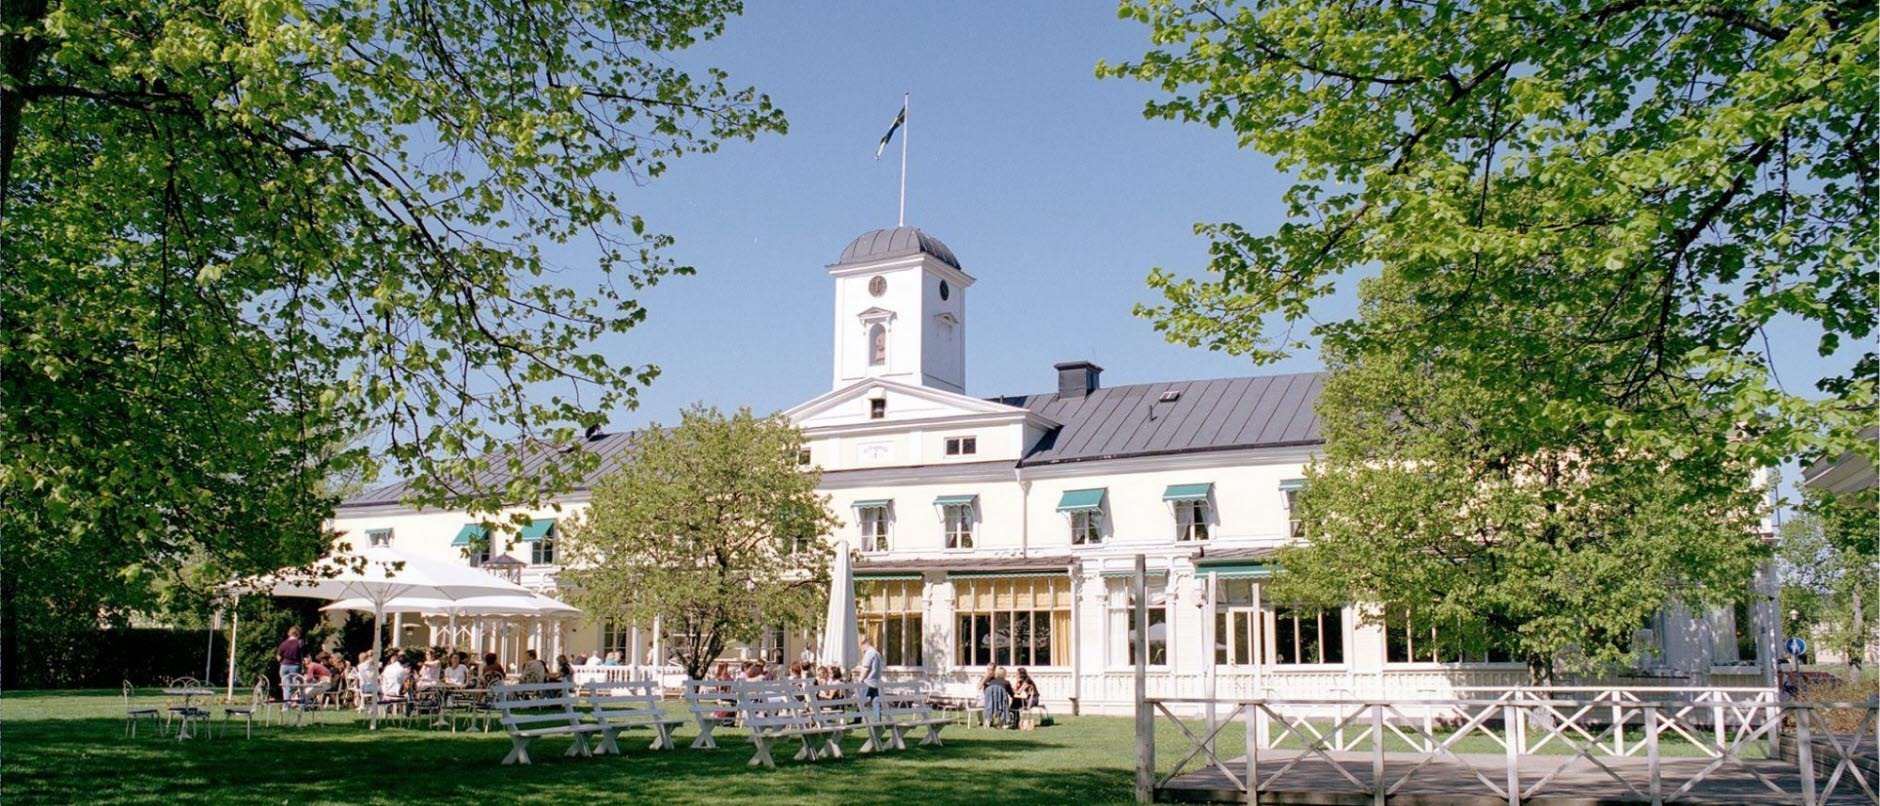 Foto: Bild visar Söderköpings brunns exteriör. En sekelskiftesbyggnad med storvit verande. I förgrunden är det stora lövträd samt en grön gräsmatta och vita cafébord.